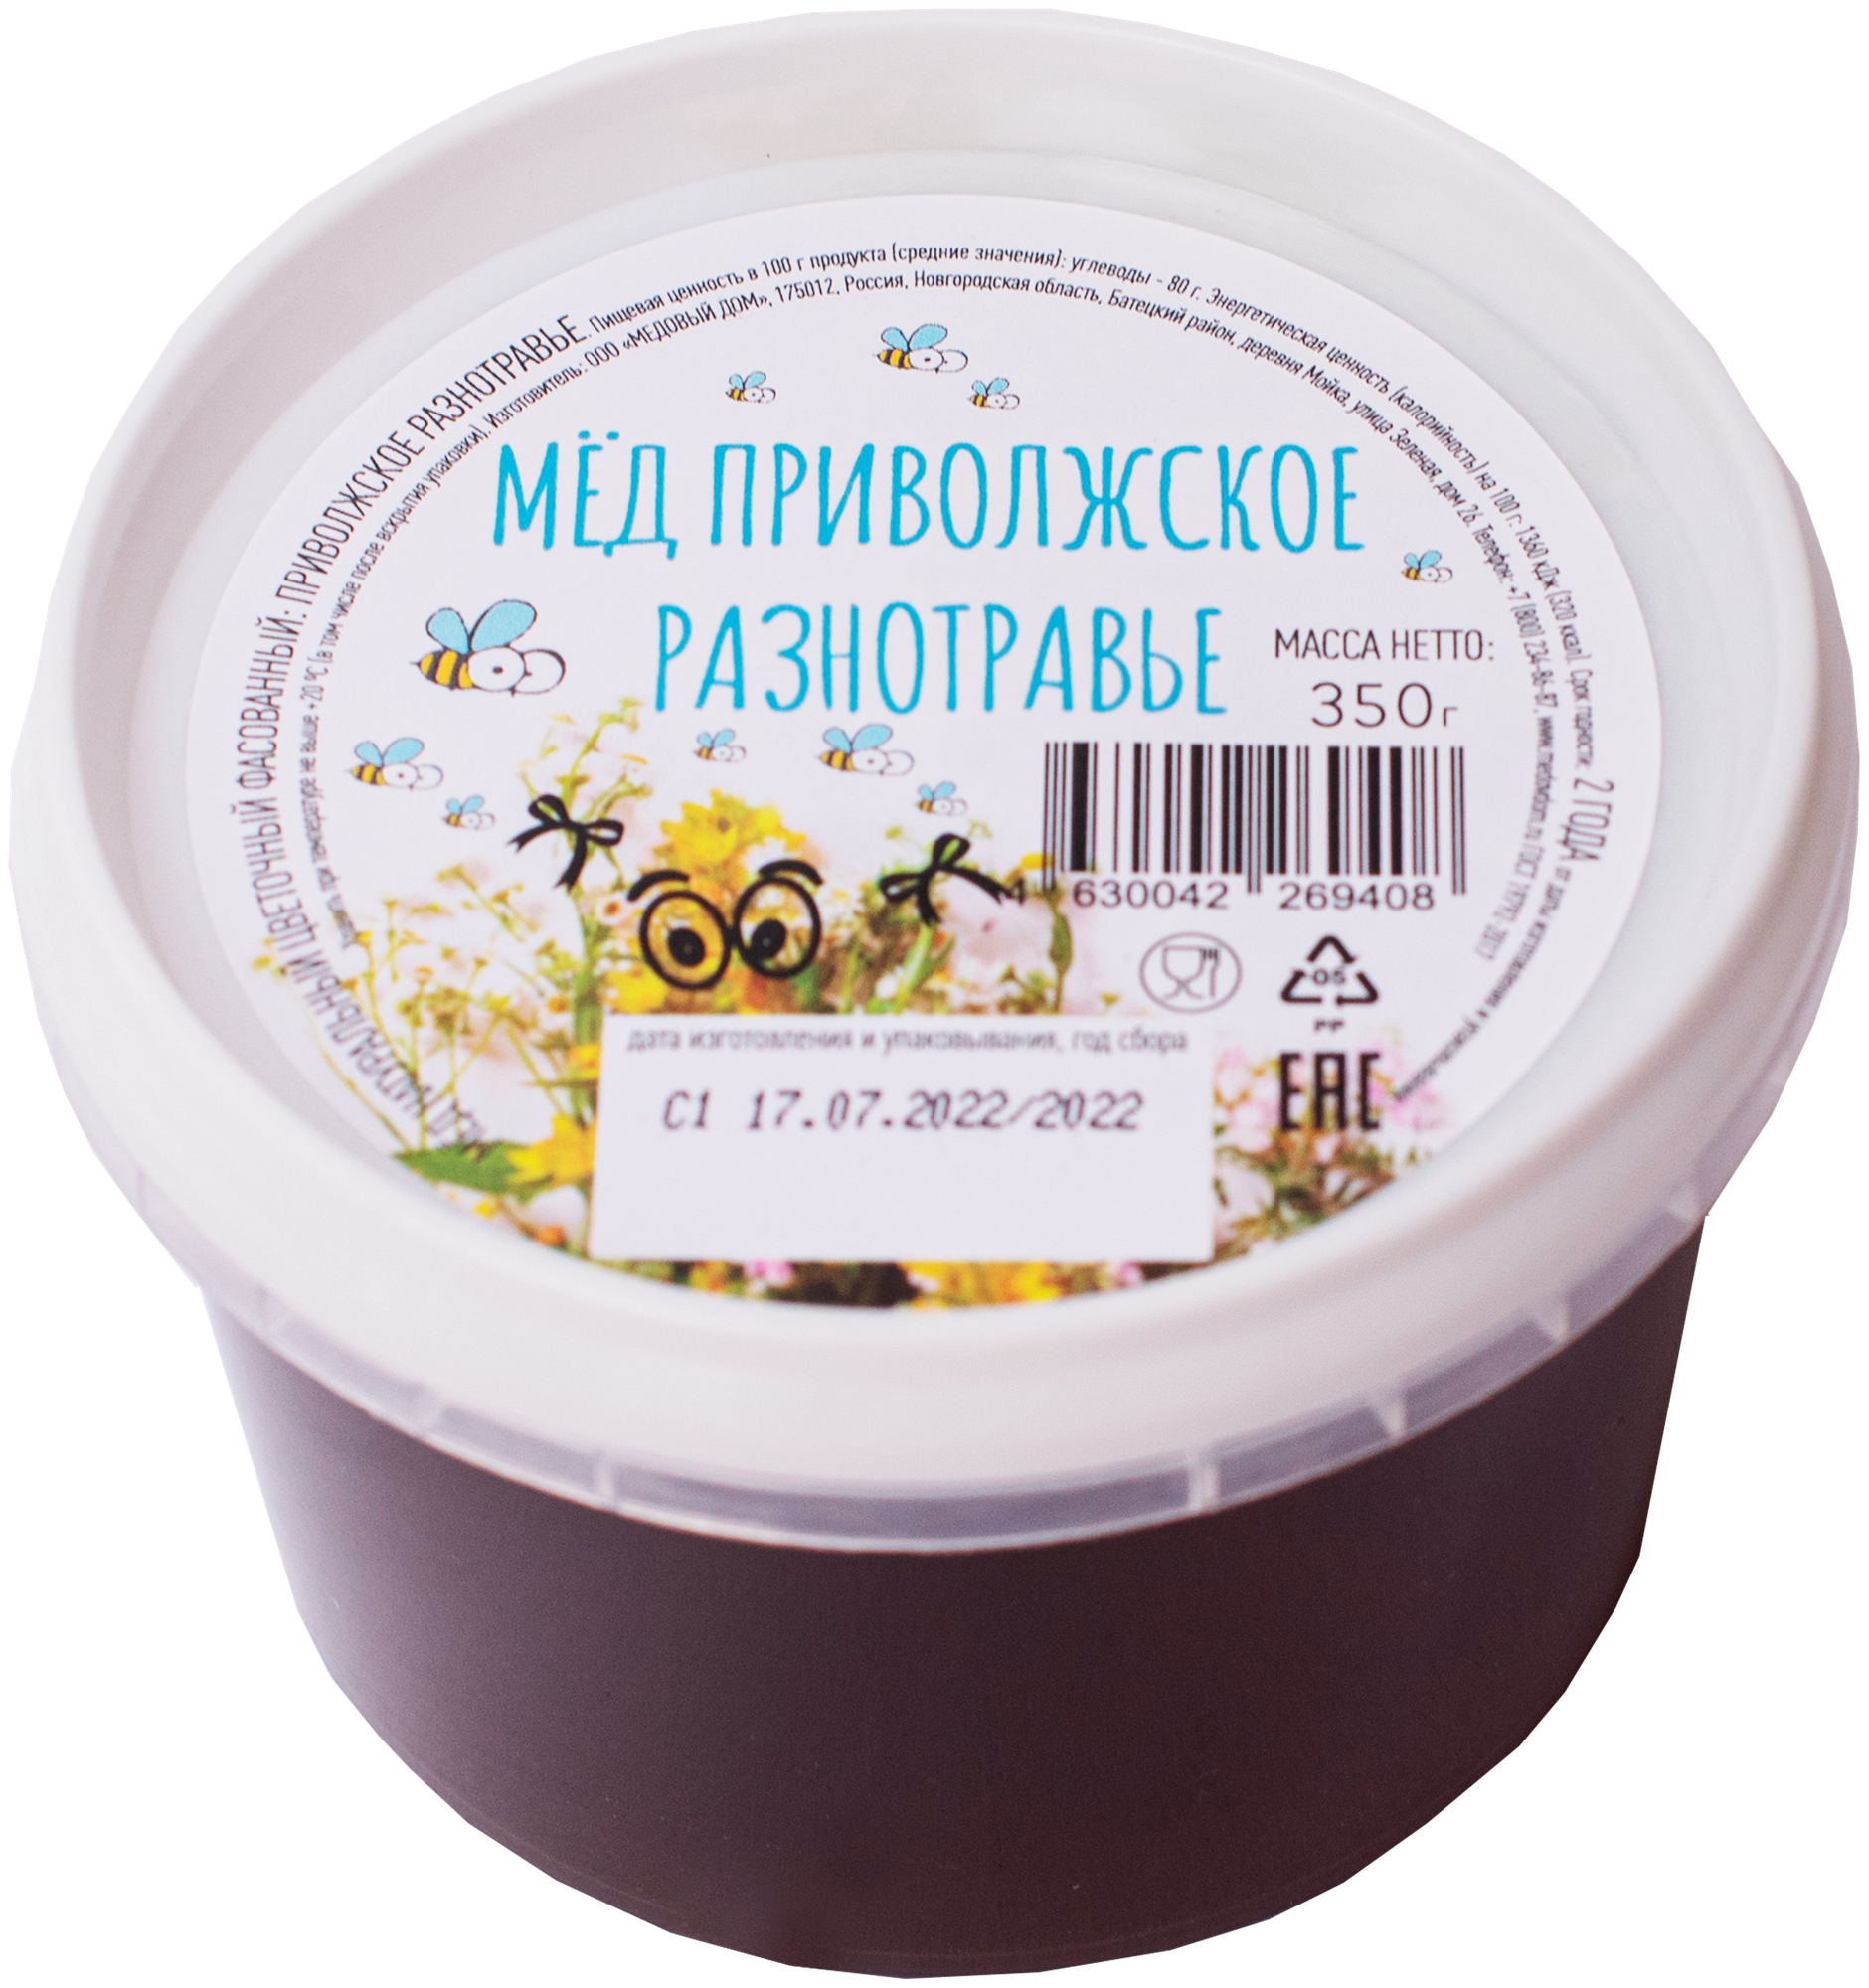 Мёд натуральный цветочный фасованный Приволжское разнотравье, 350 г * 12 шт, пластик